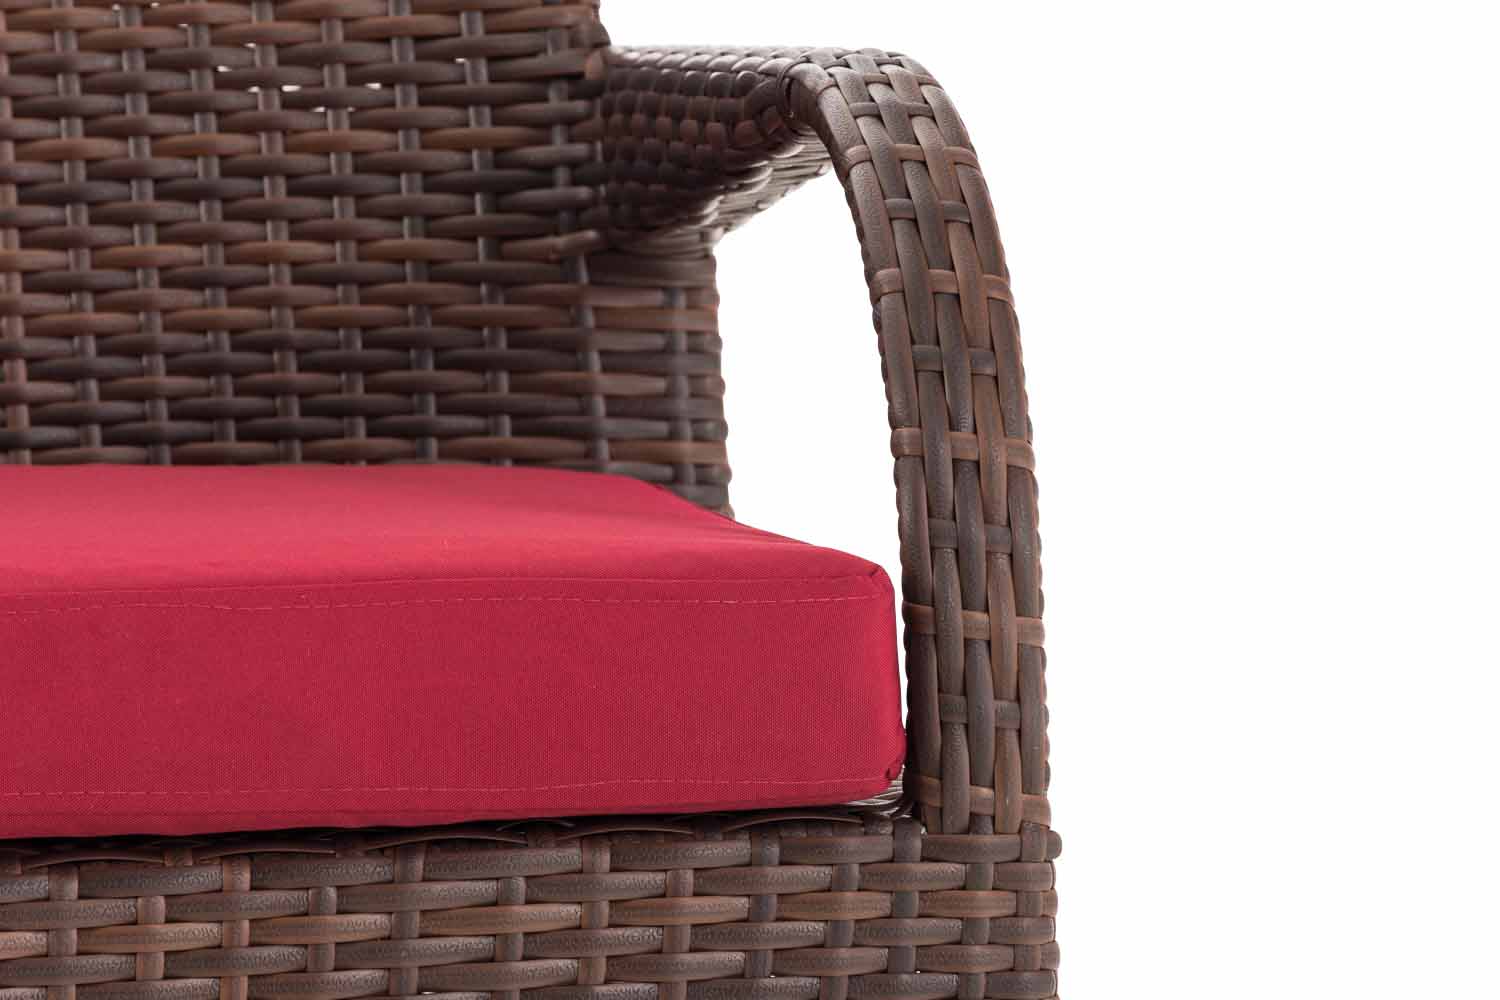 Polyrattan Gartenstuhl Stuhl Sessel Pizzo braun-meliert rubinrot